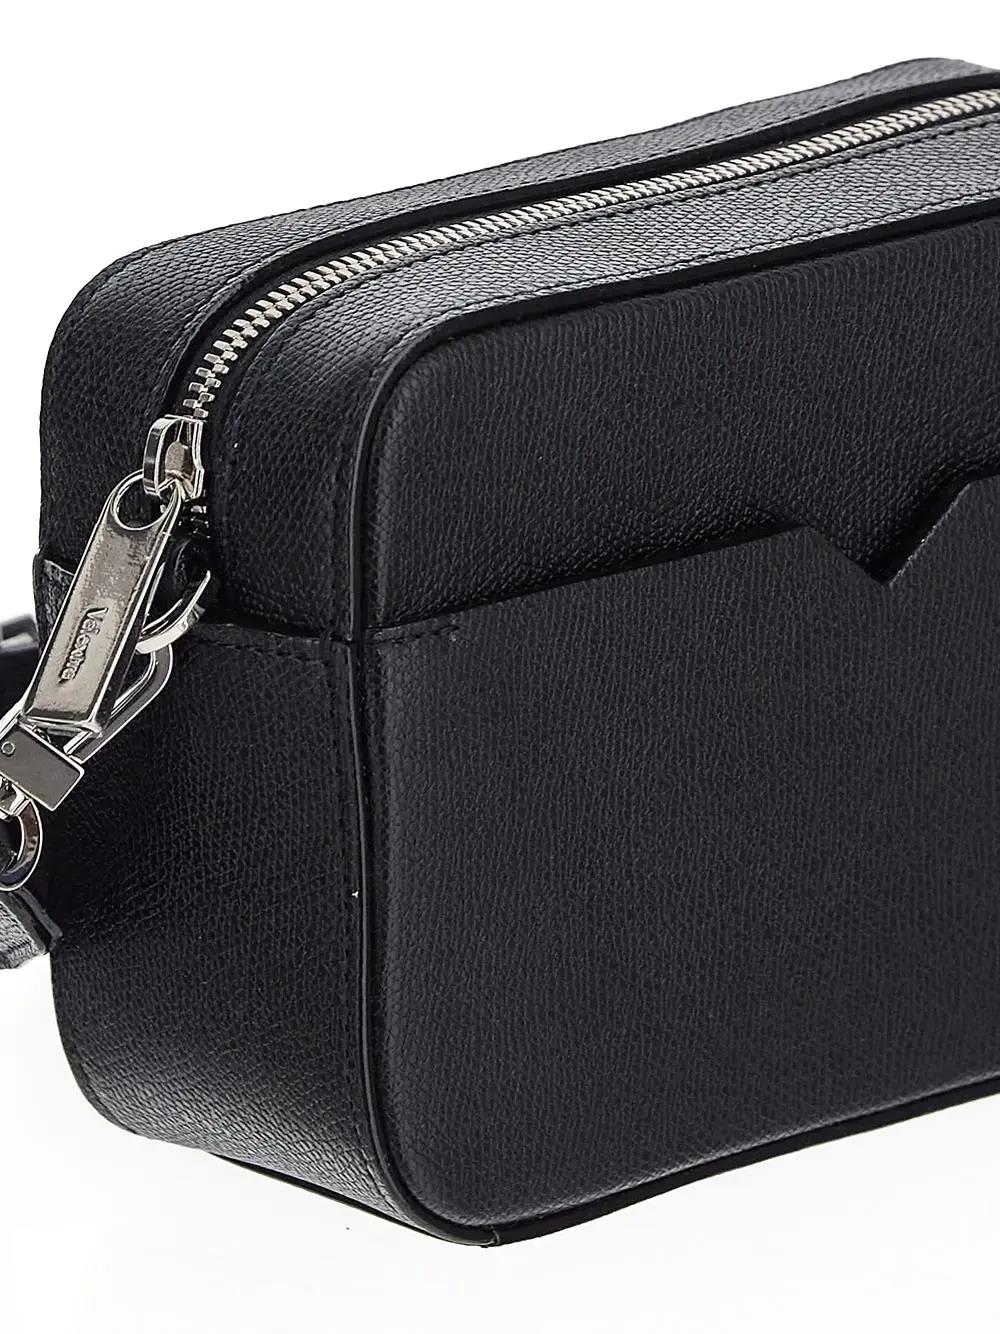 Shop Valextra Reporter V-line Mini Bag In Black